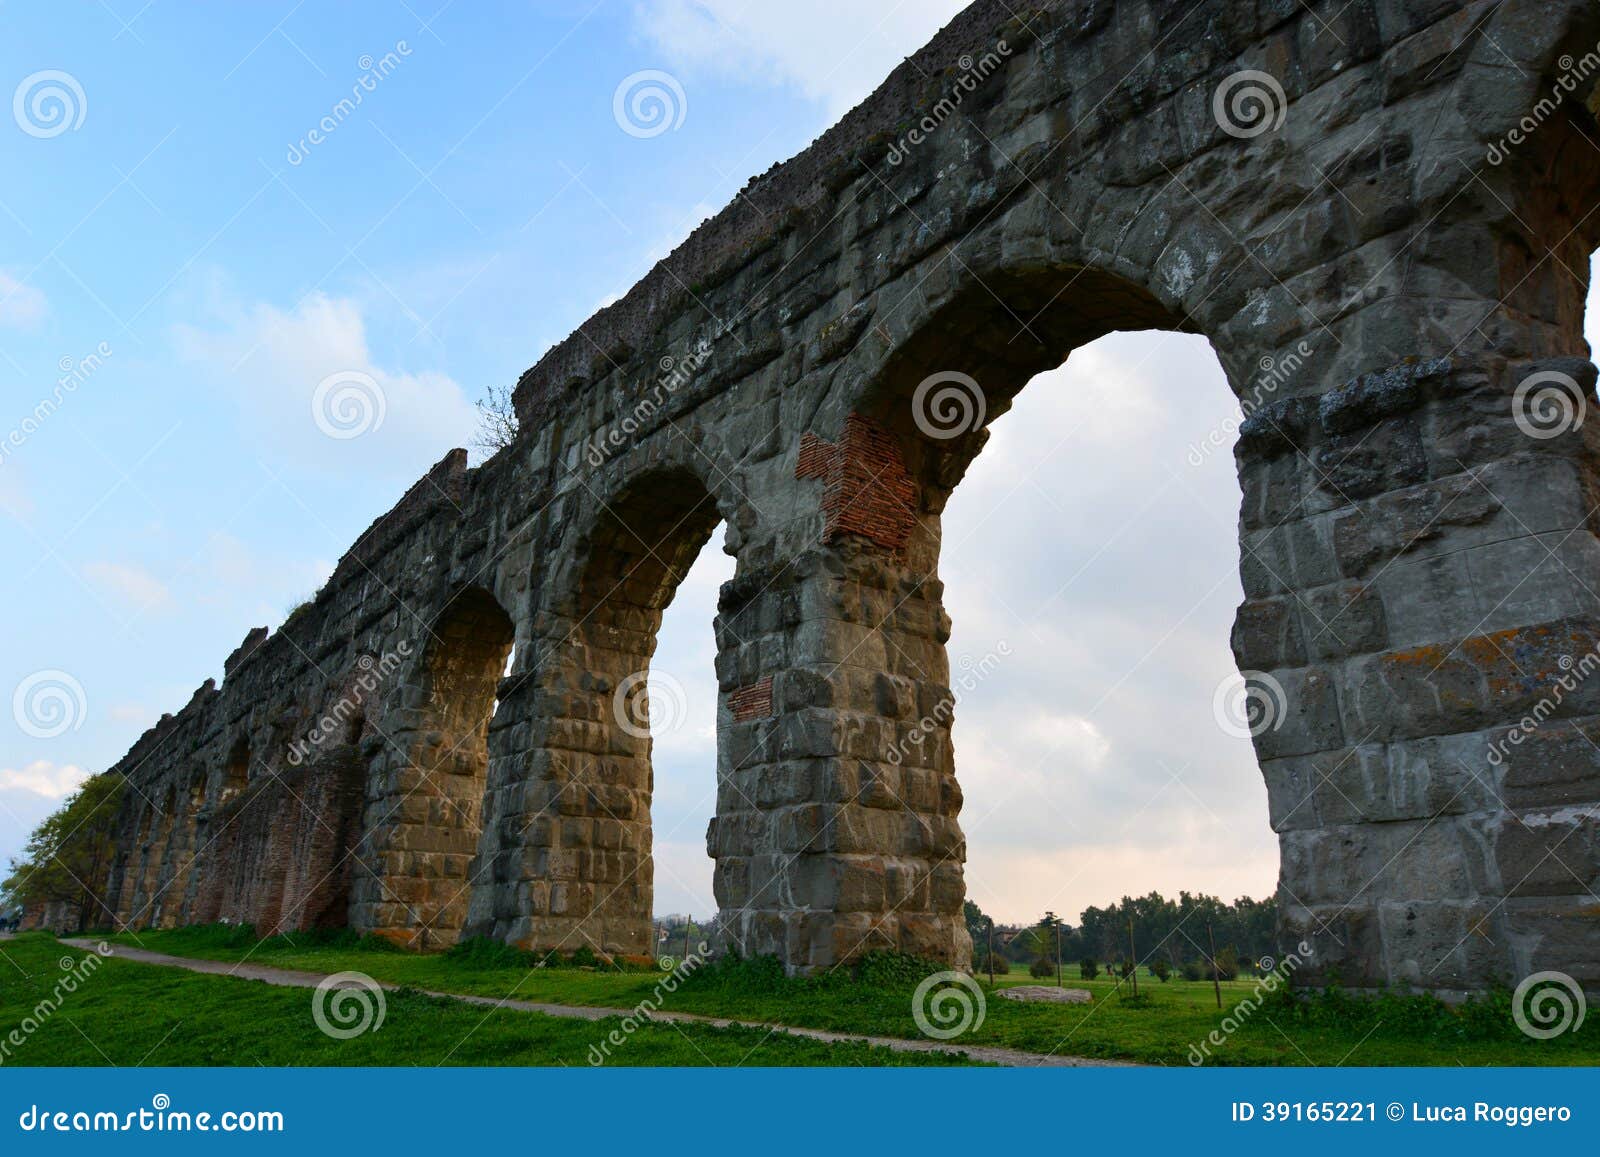 roman aqueduct. parco degli acquedotti, roma